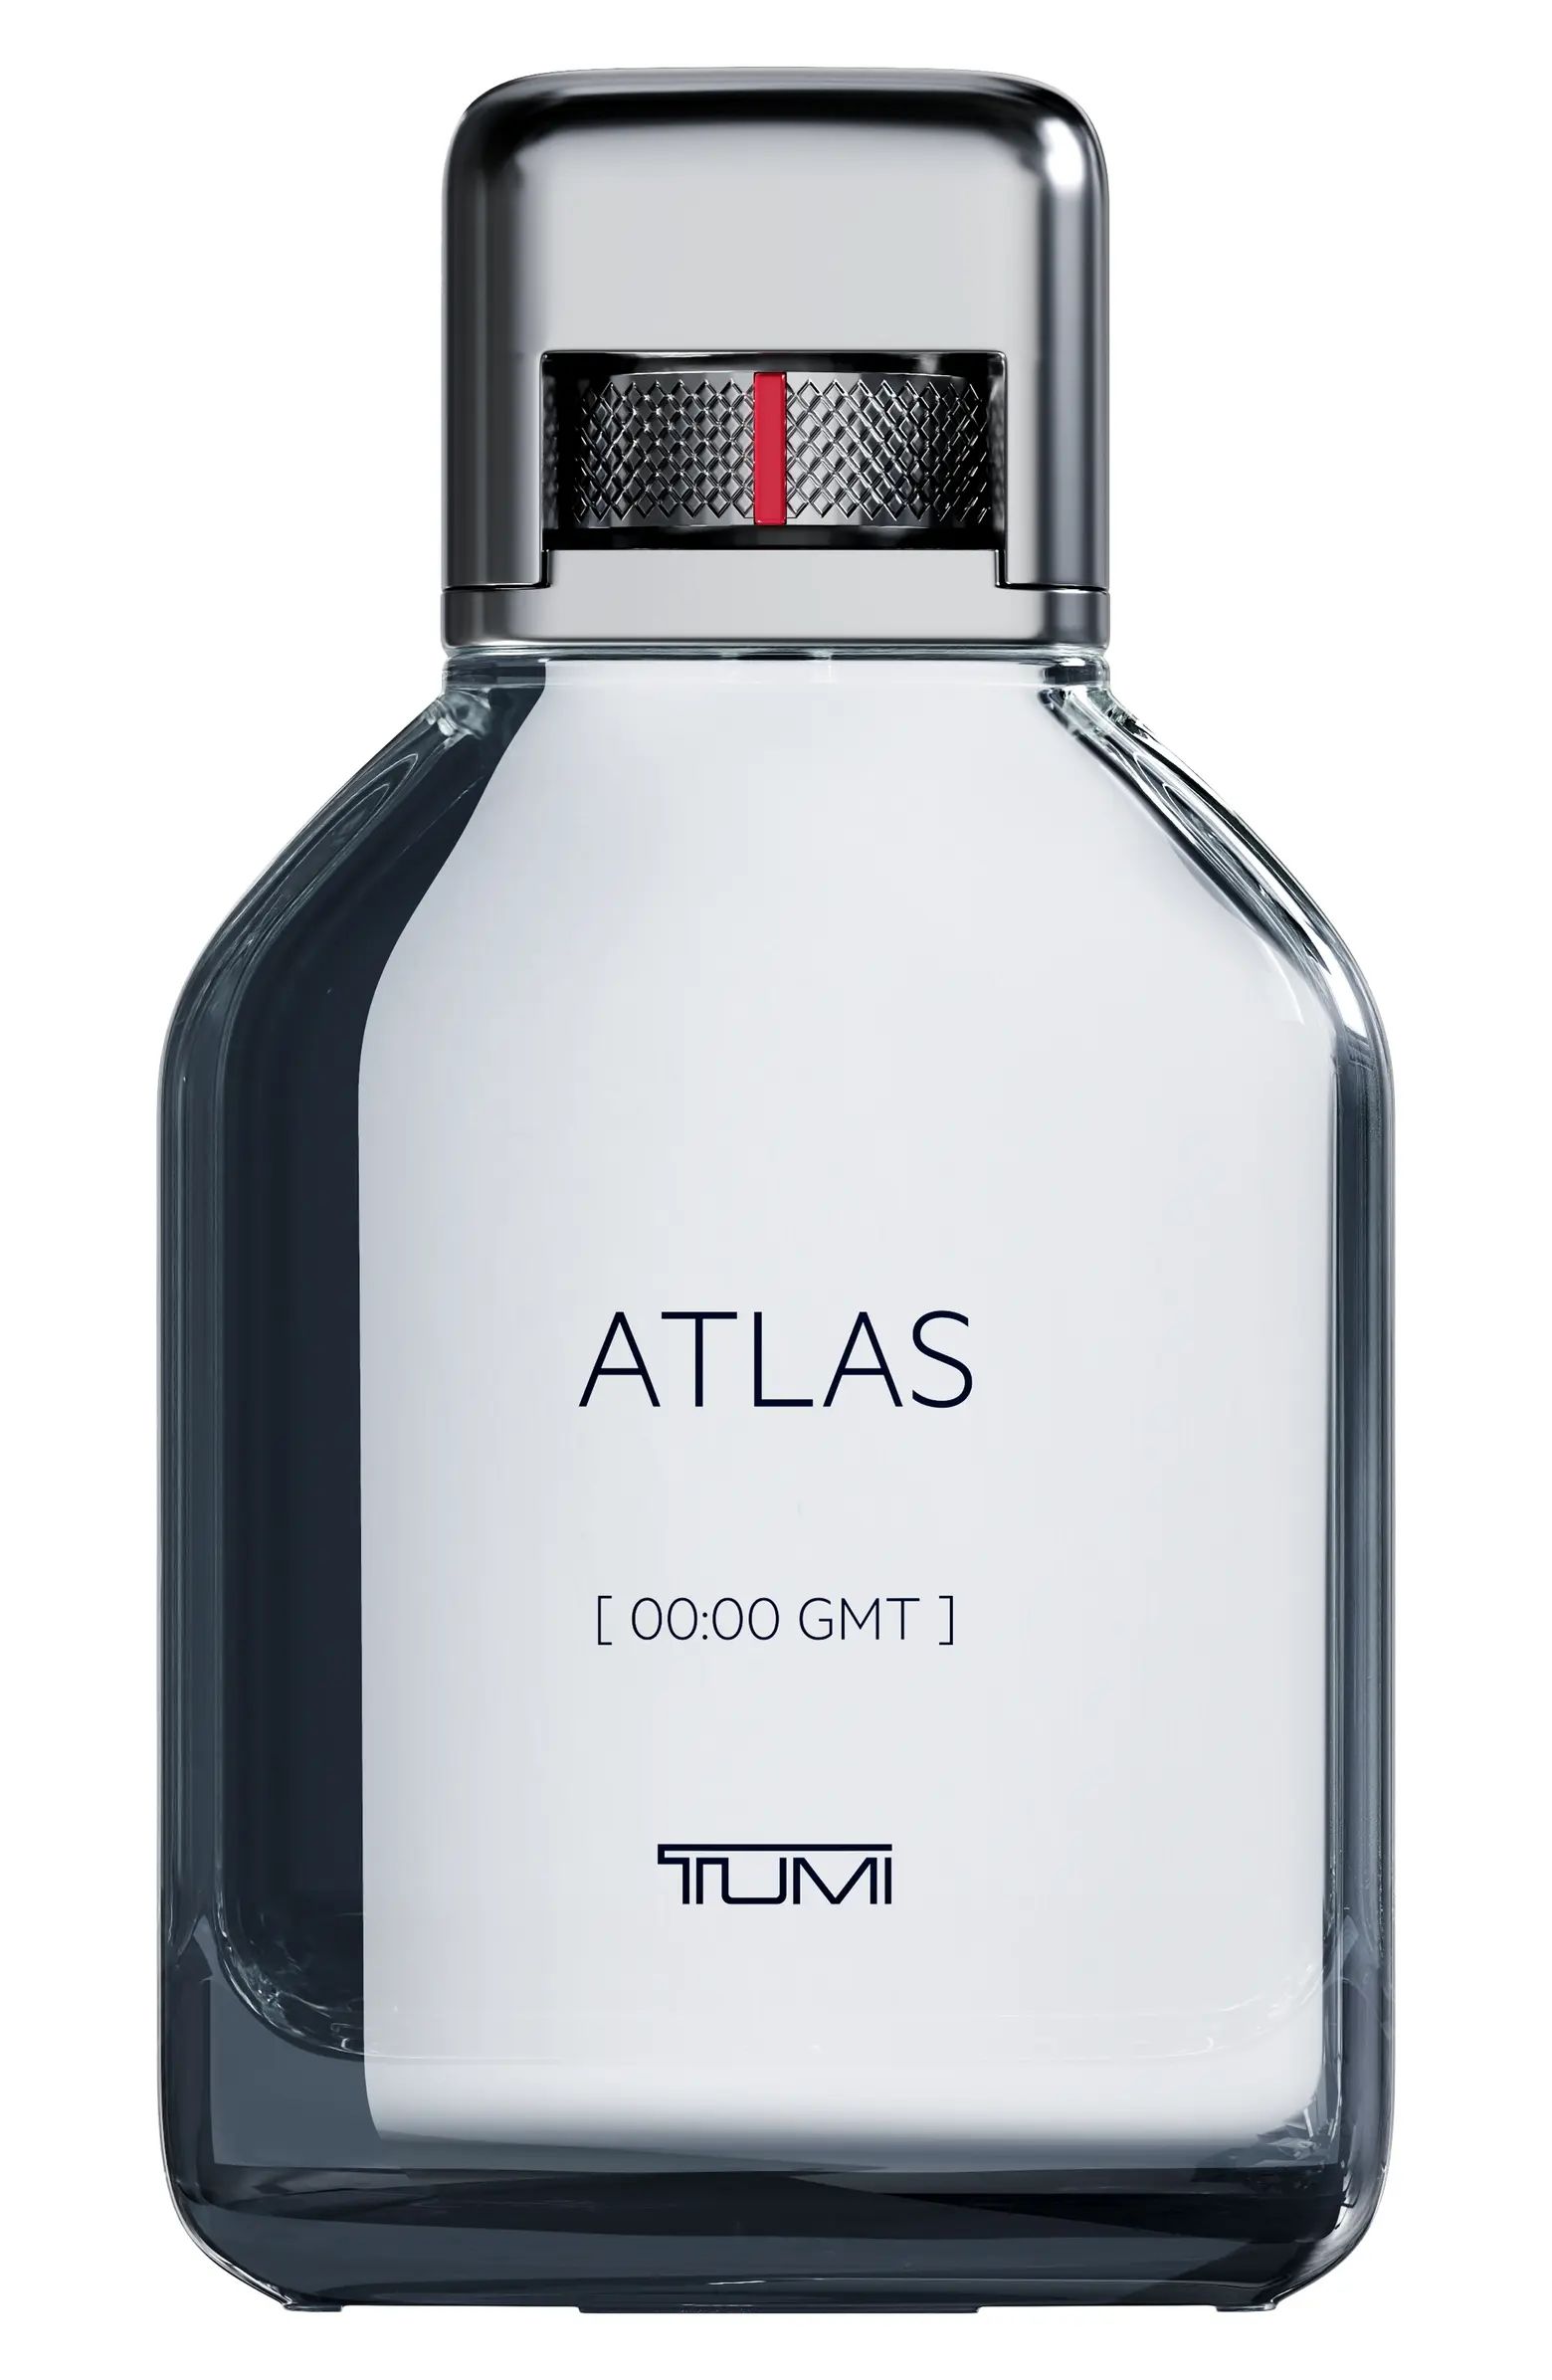 Atlas 00:00 GMT Eau de Parfum | Nordstrom